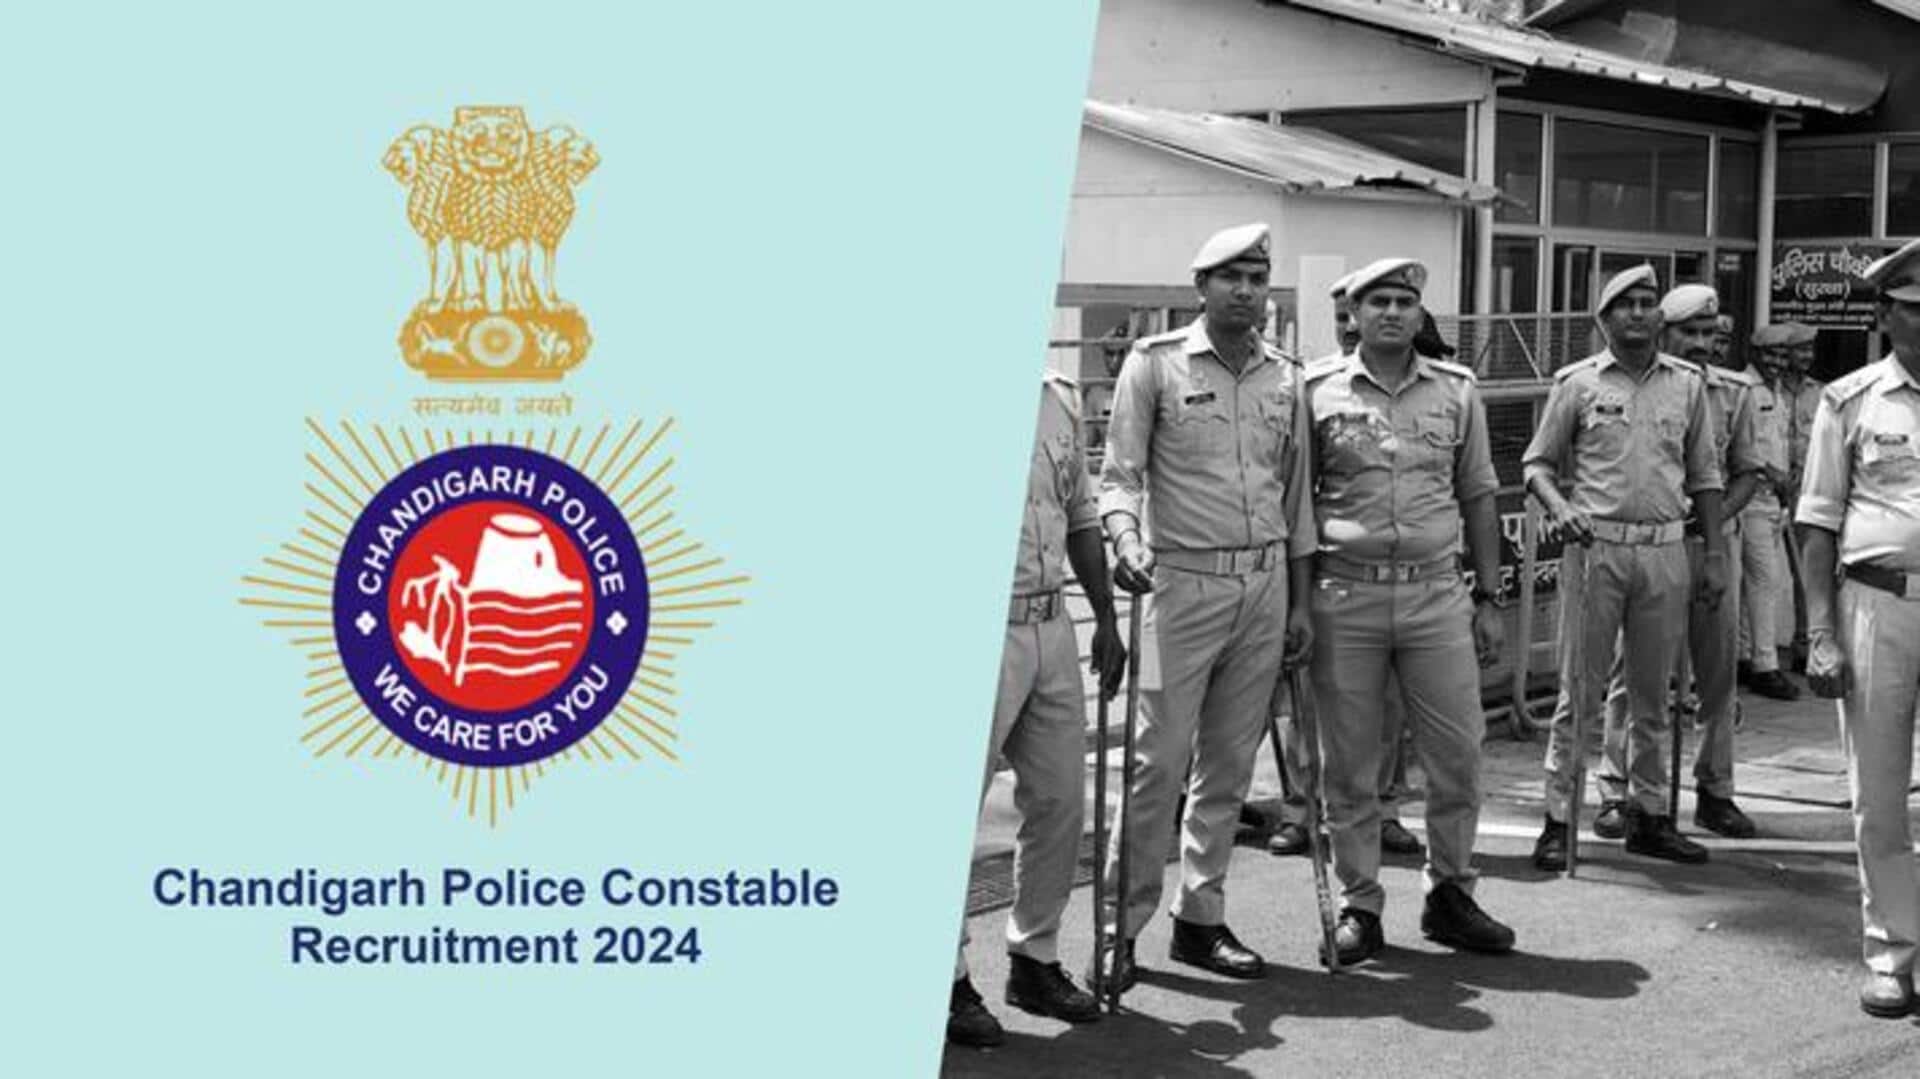 चंडीगढ़ पुलिस में कांस्टेबल भर्ती के लिए आवेदन प्रक्रिया शुरू, जानें योग्यता मानदंड